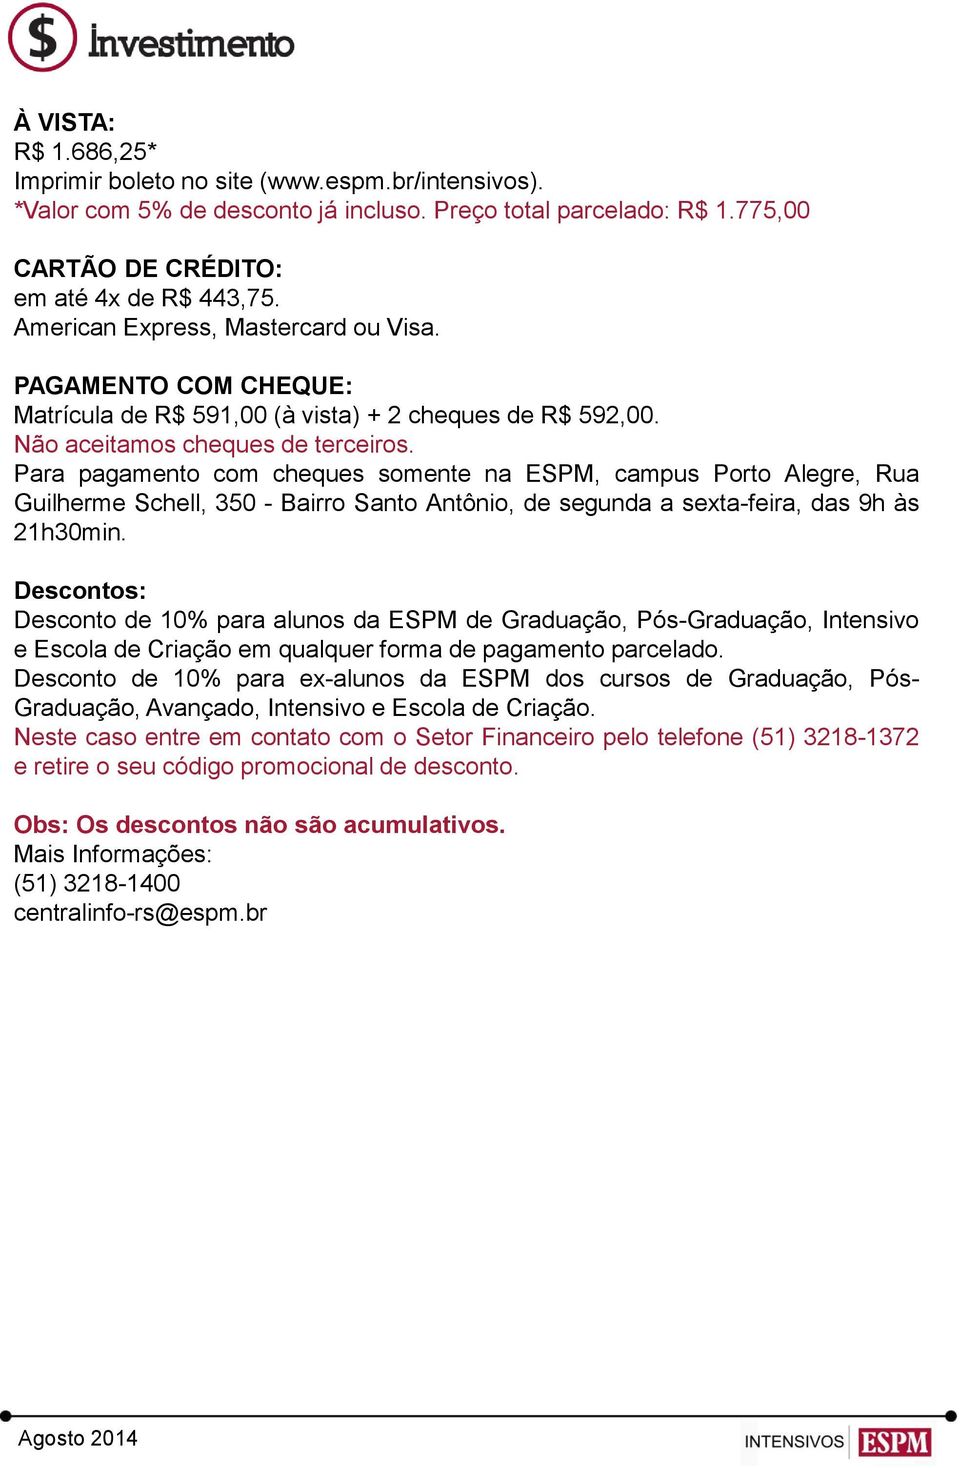 Para pagamento com cheques somente na ESPM, campus Porto Alegre, Rua Guilherme Schell, 350 - Bairro Santo Antônio, de segunda a sexta-feira, das 9h às 21h30min.